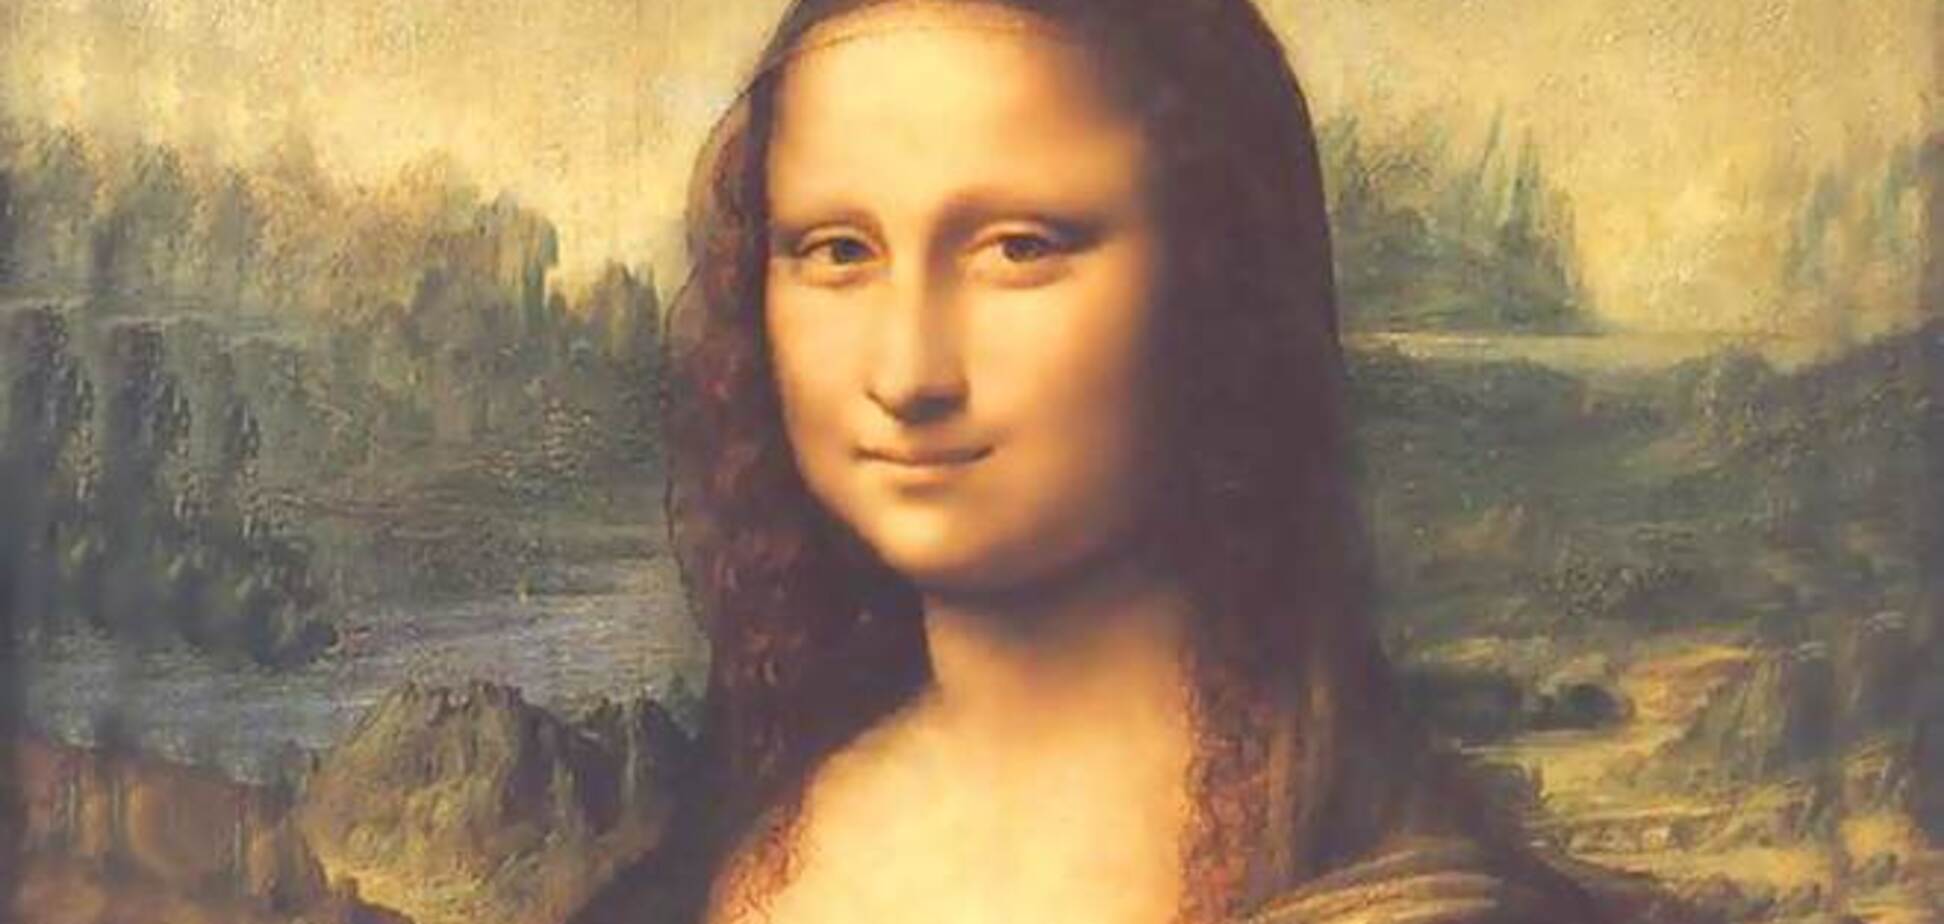 Франция хочет рассчитаться с долгами за счет продажи Мона Лизы